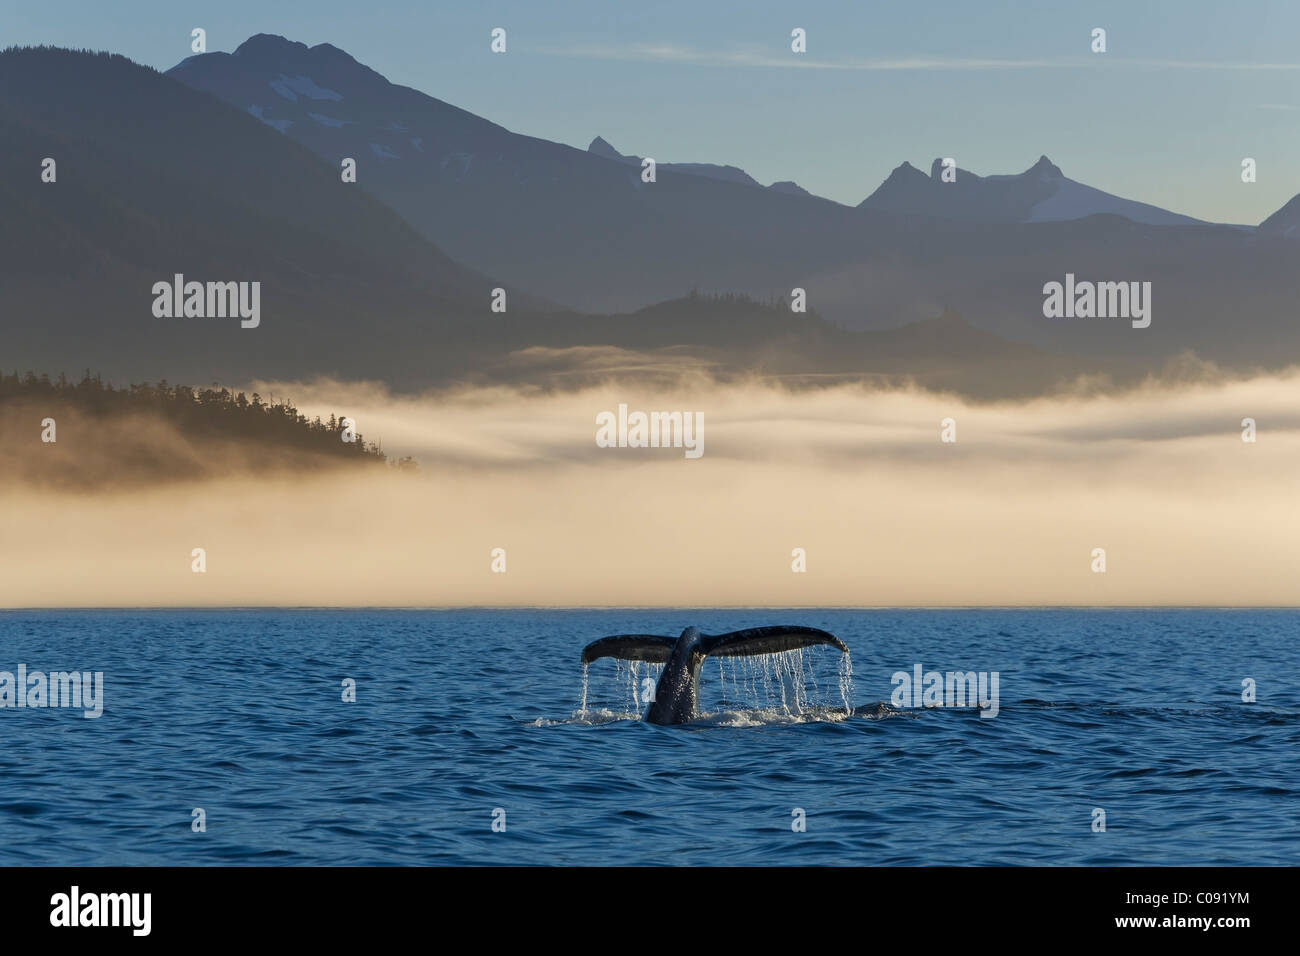 Queue de baleine à bosse visible dans d'un brouillard enveloppé de la rive en Frederick Sound, le passage de l'intérieur, chaîne côtière, l'Alaska. Composite Banque D'Images